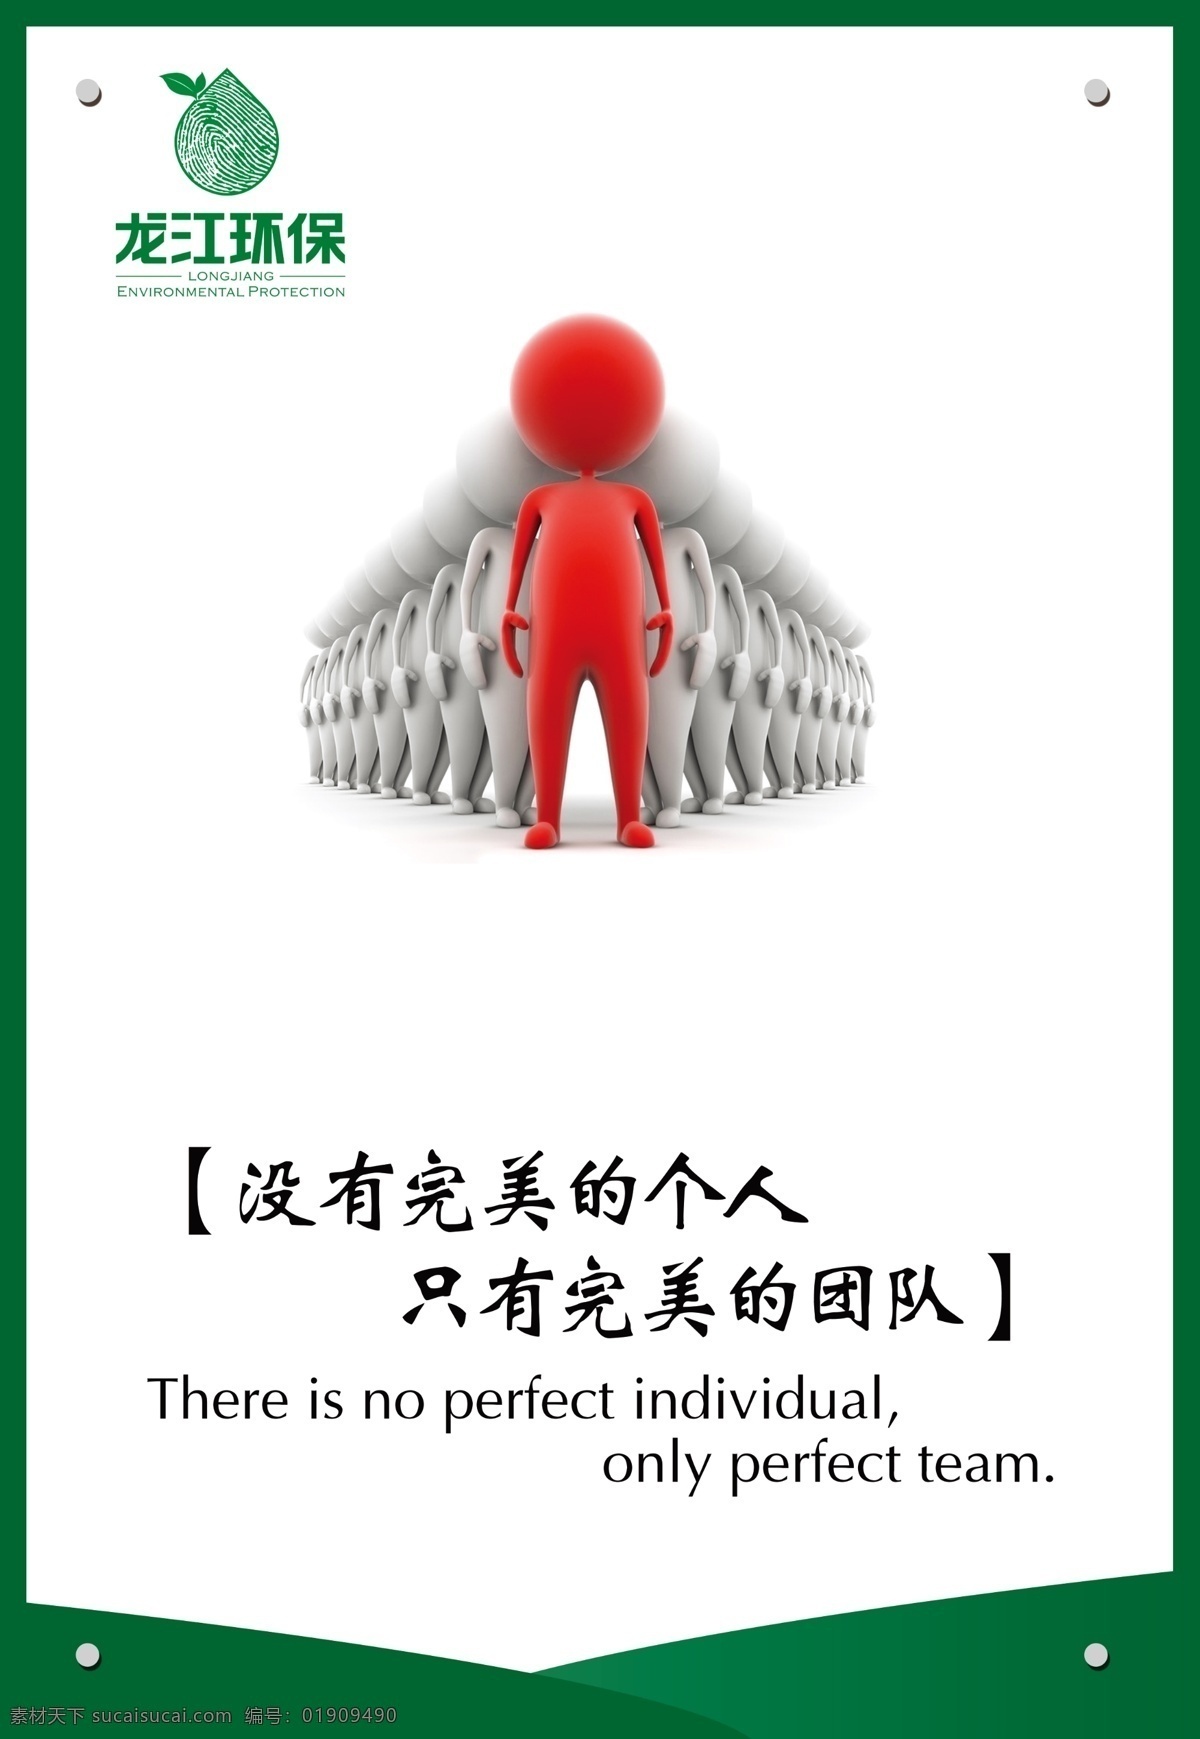 没有 完美 个人 没有完美个人 团队 小人 龙江环保 只有完美团队 企业展板 企业形象 企业文化